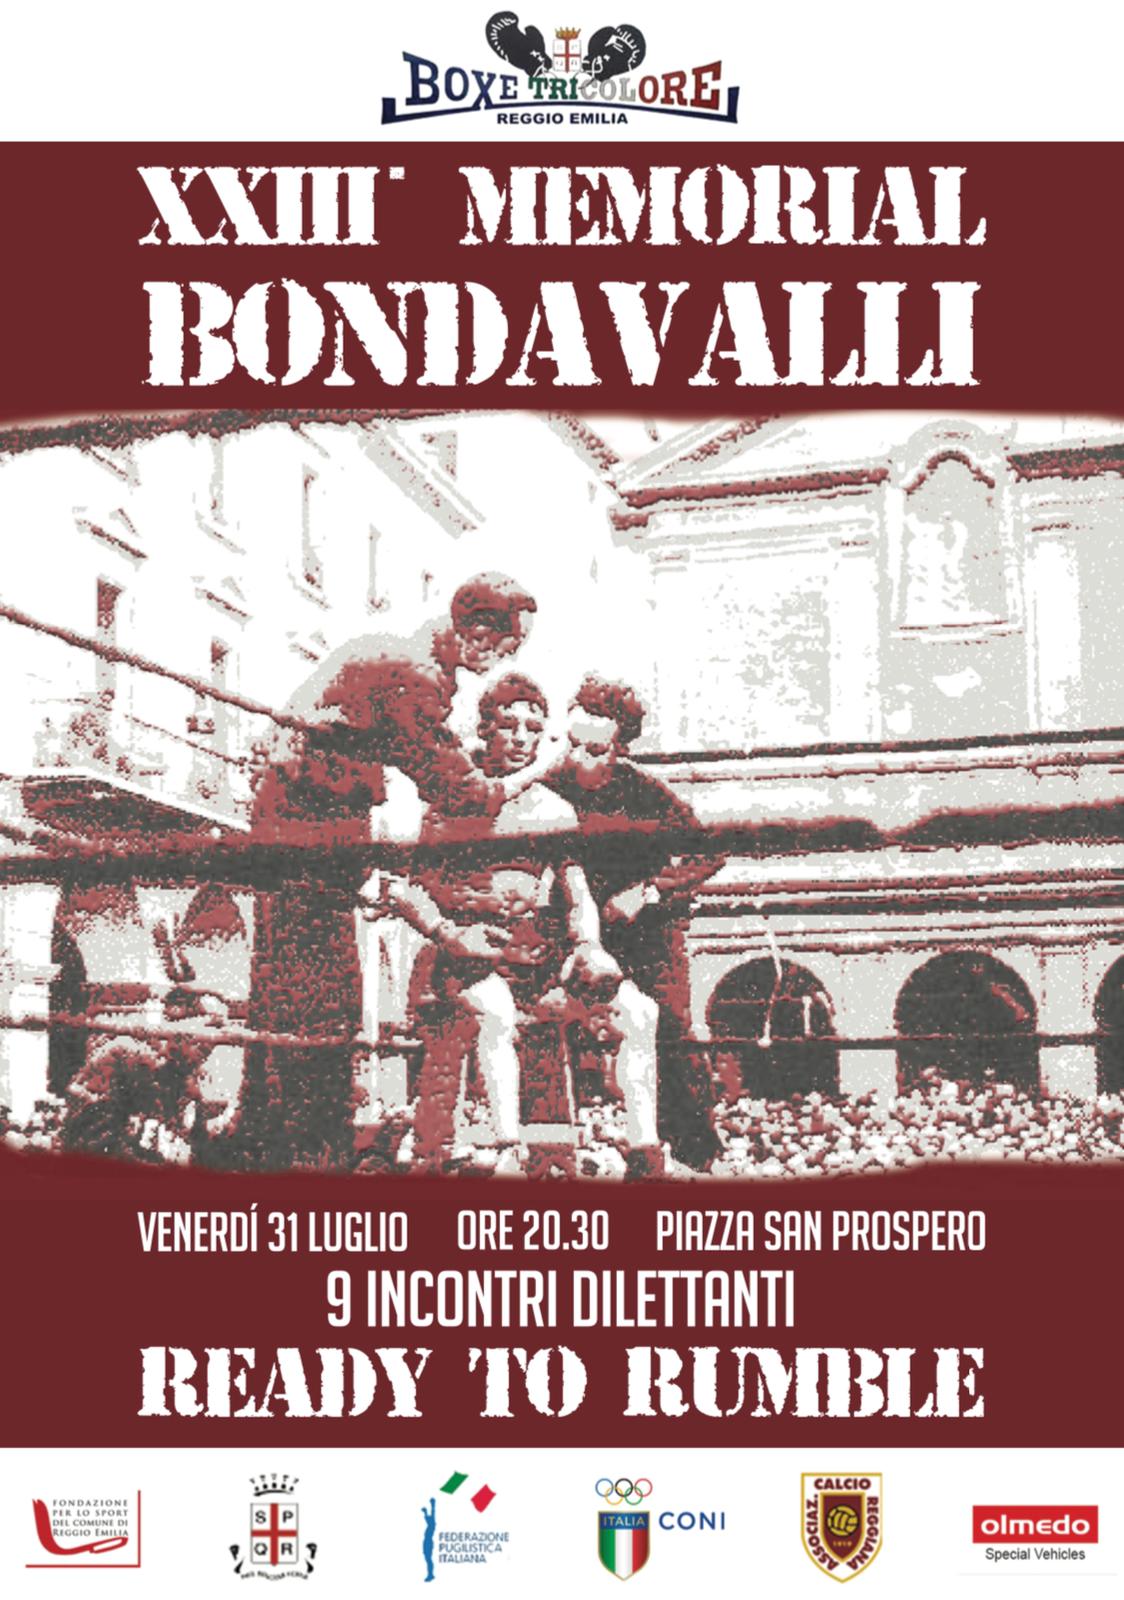 Il 31 Luglio a Reggio Emilia la XXIII Edizione del Memorial Bondavalli